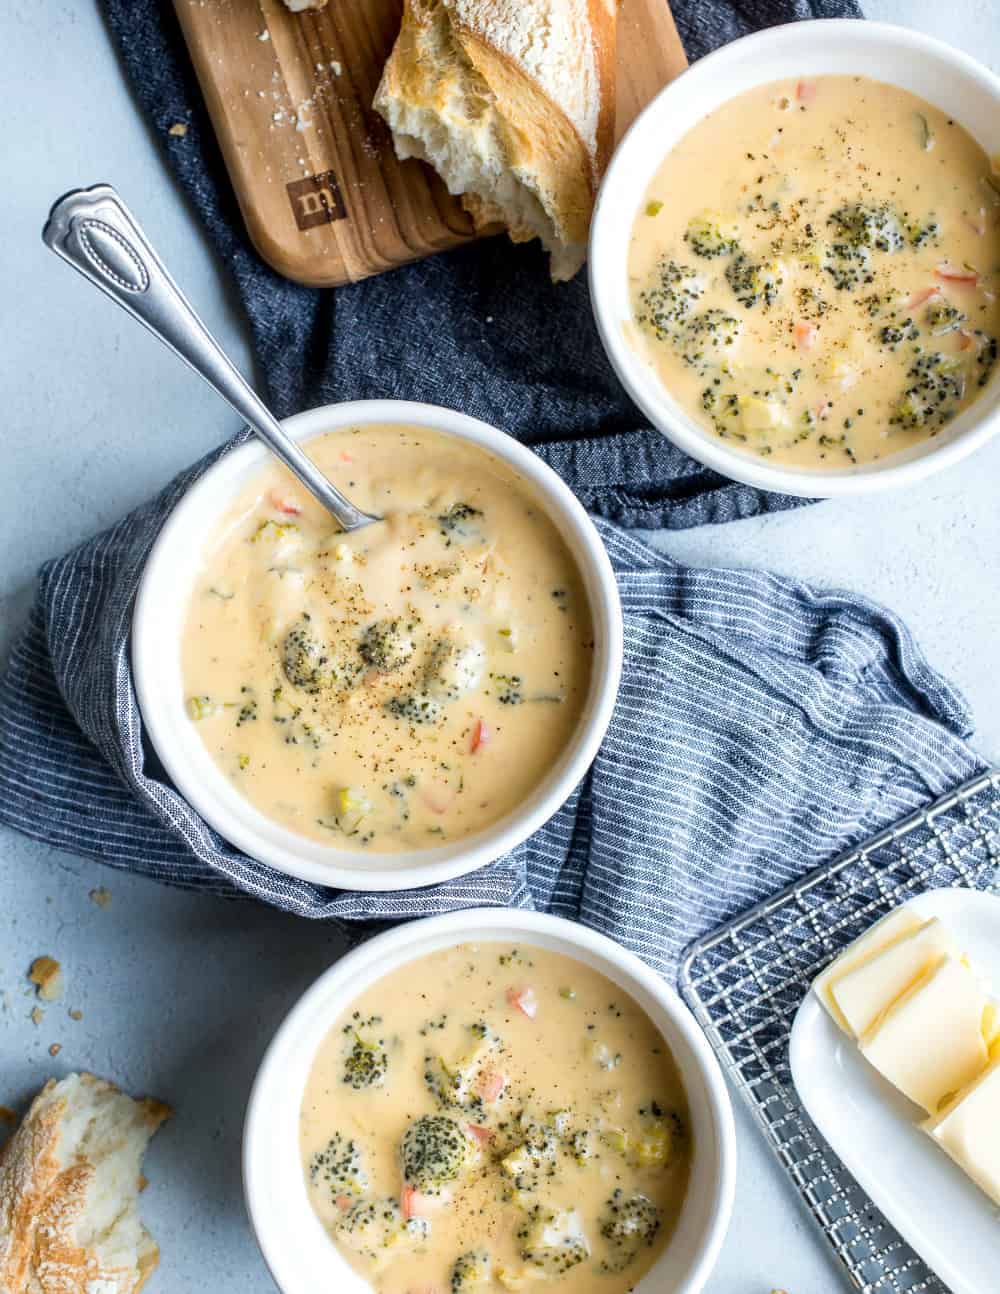 Schalen von Brokkoli-Käse-Suppe angeordnet neben Brot und butter